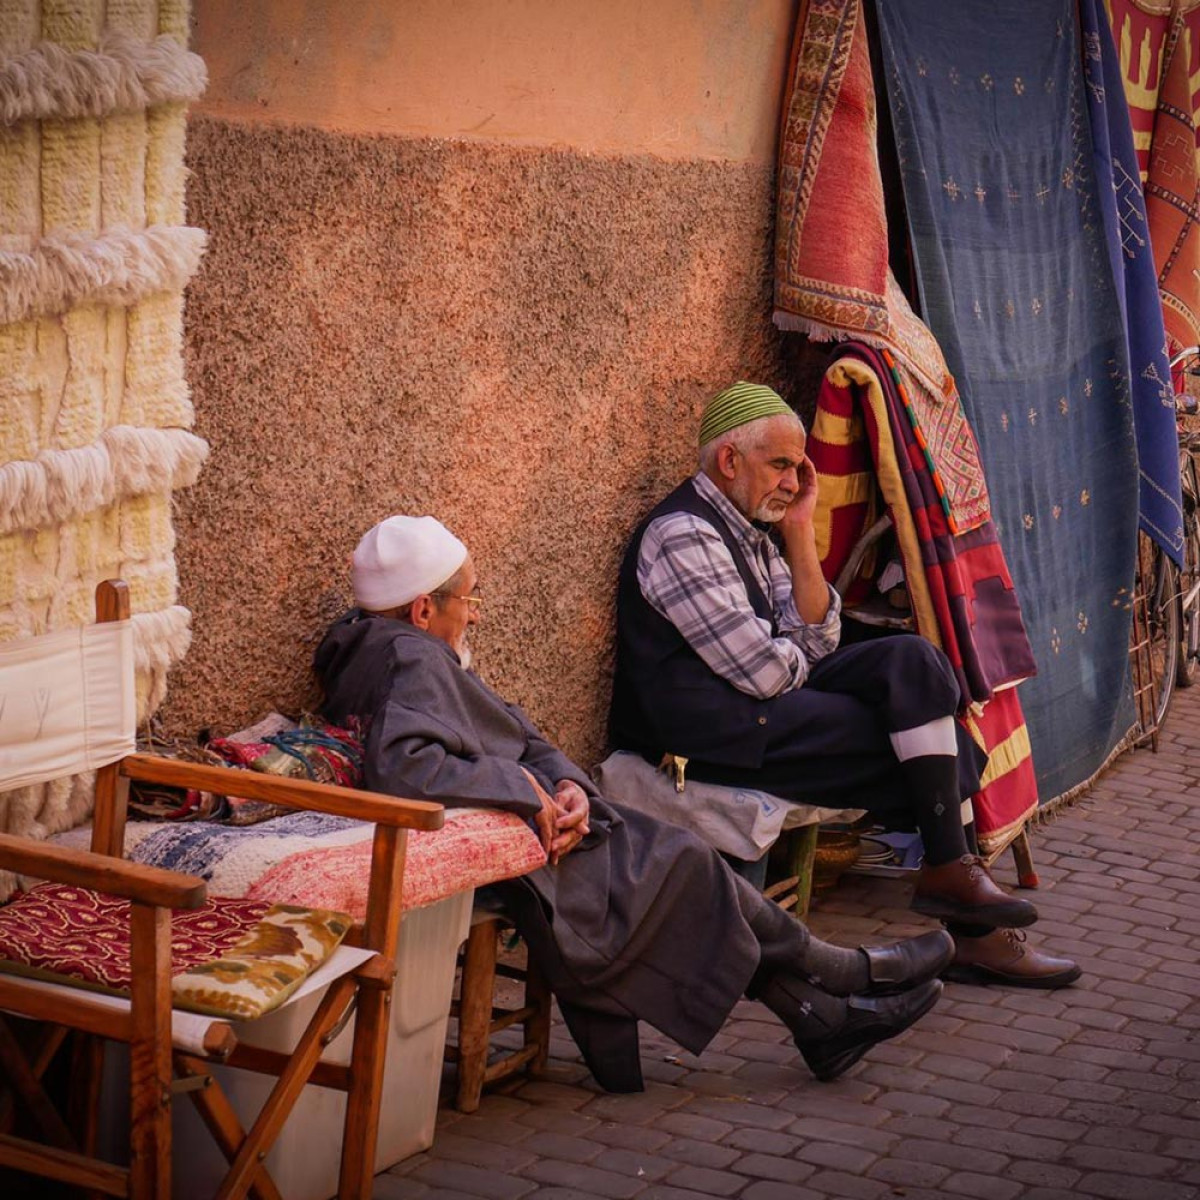 Bezoek de souks van Marrakech